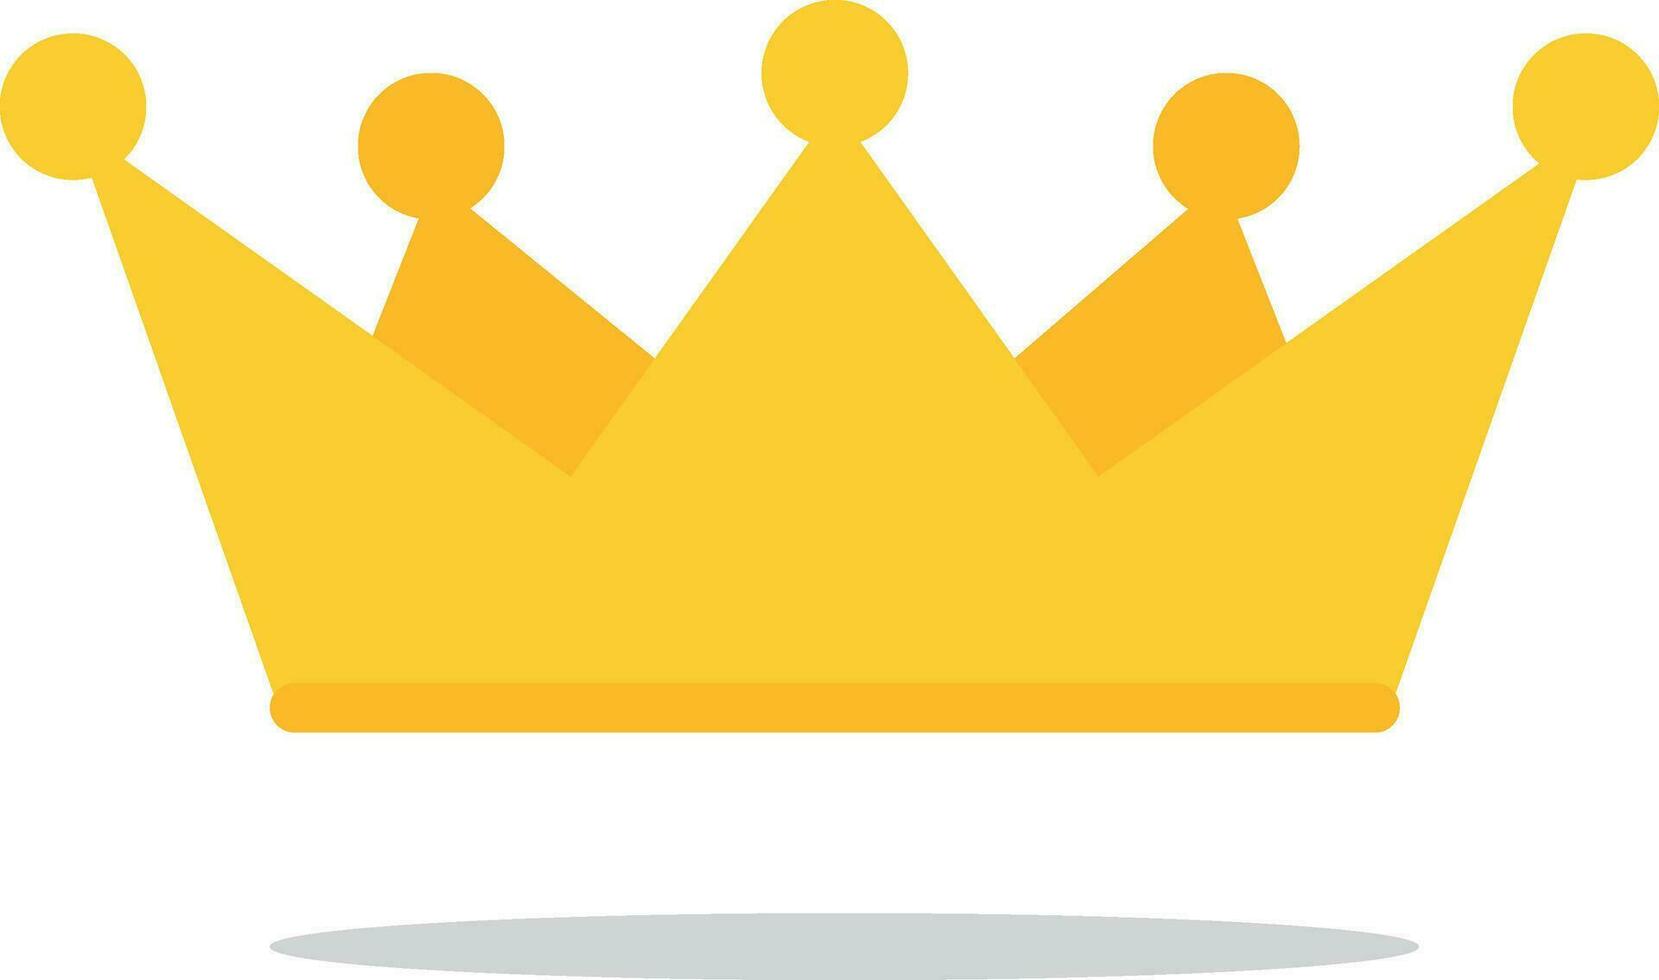 König Krone eben Vektor Symbol. golden königlich Krone mit Königin Prinzessin Design.